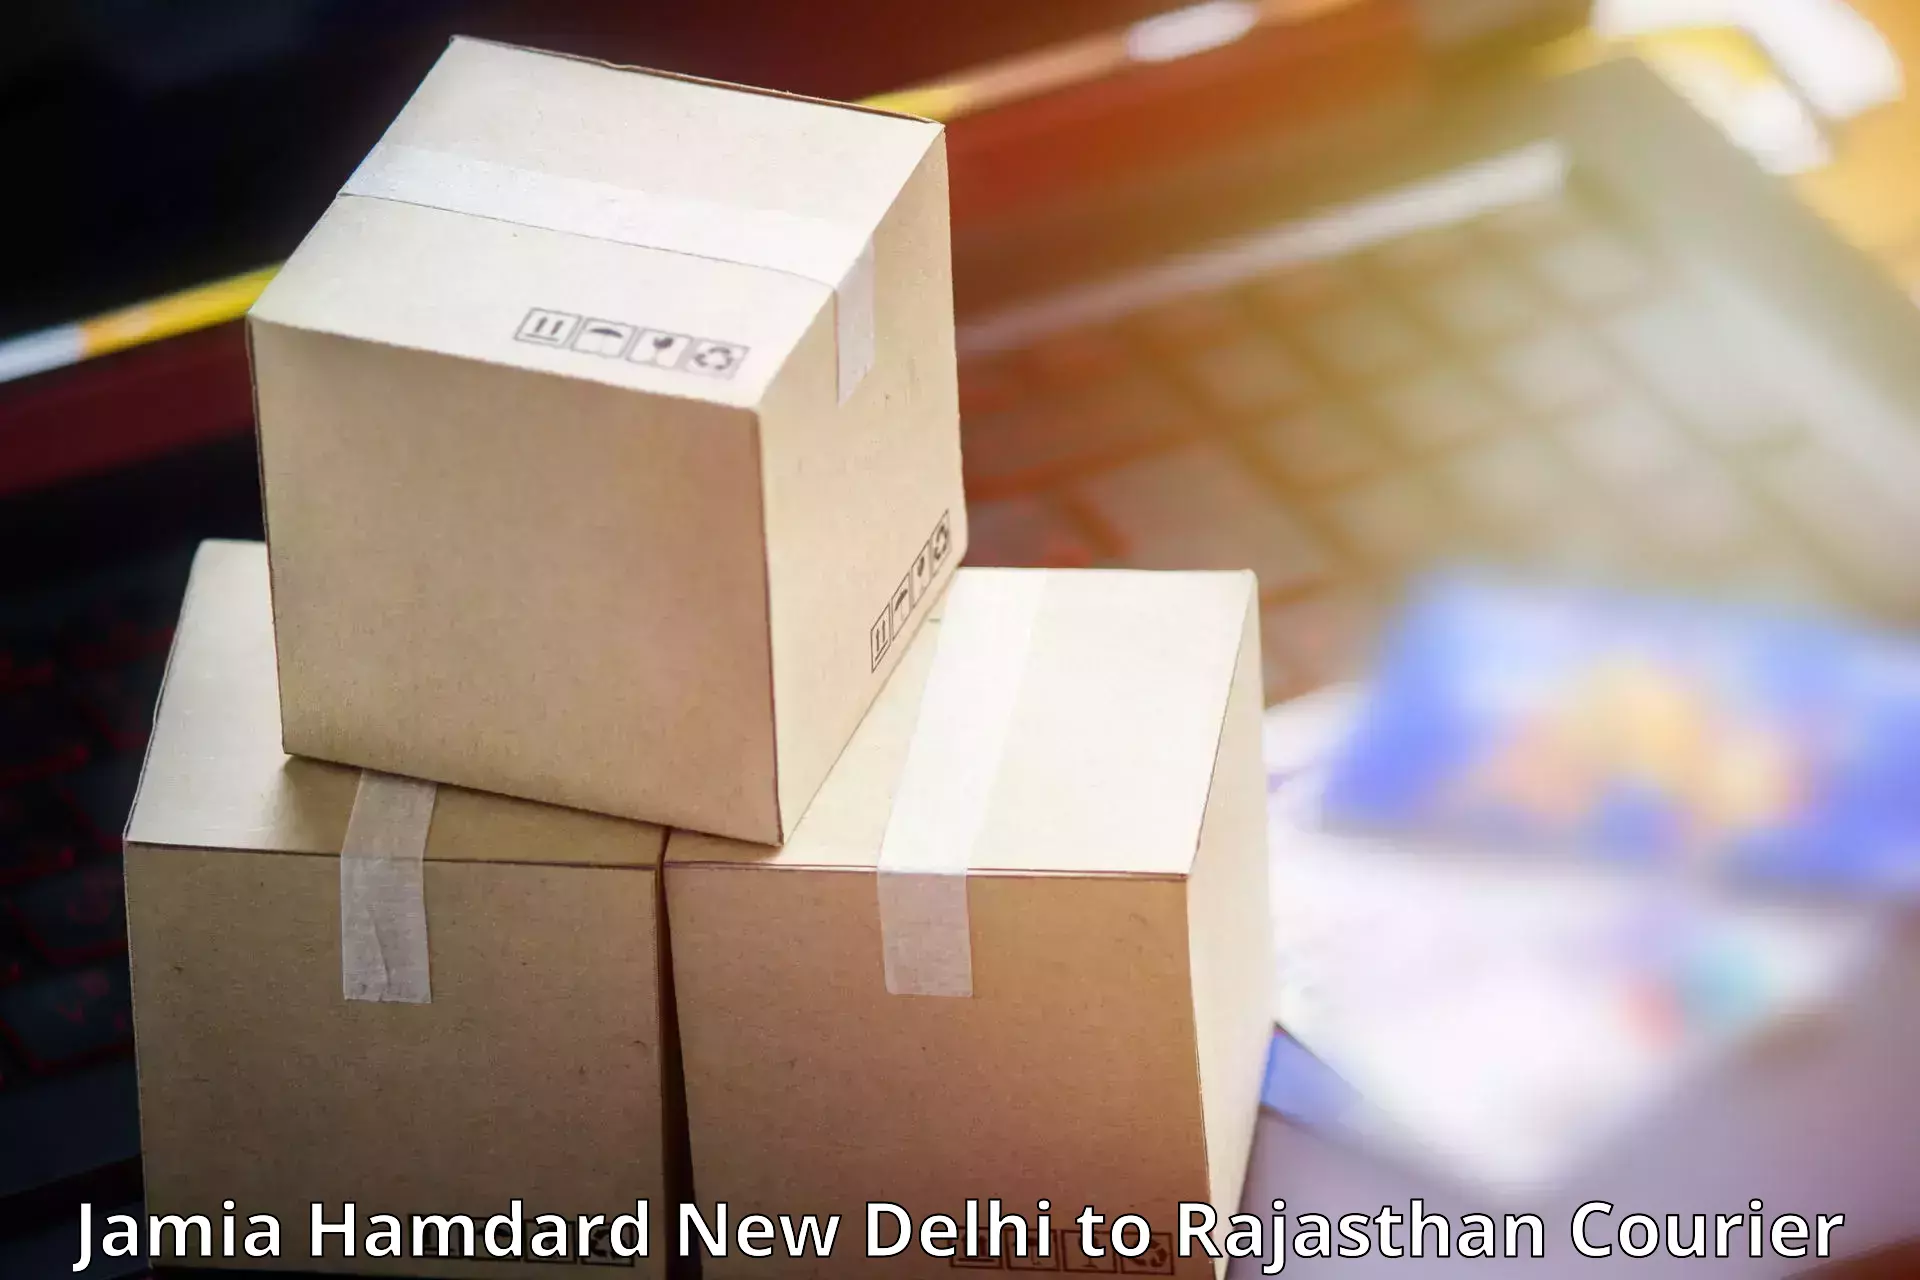 Versatile courier options Jamia Hamdard New Delhi to Nasirabad